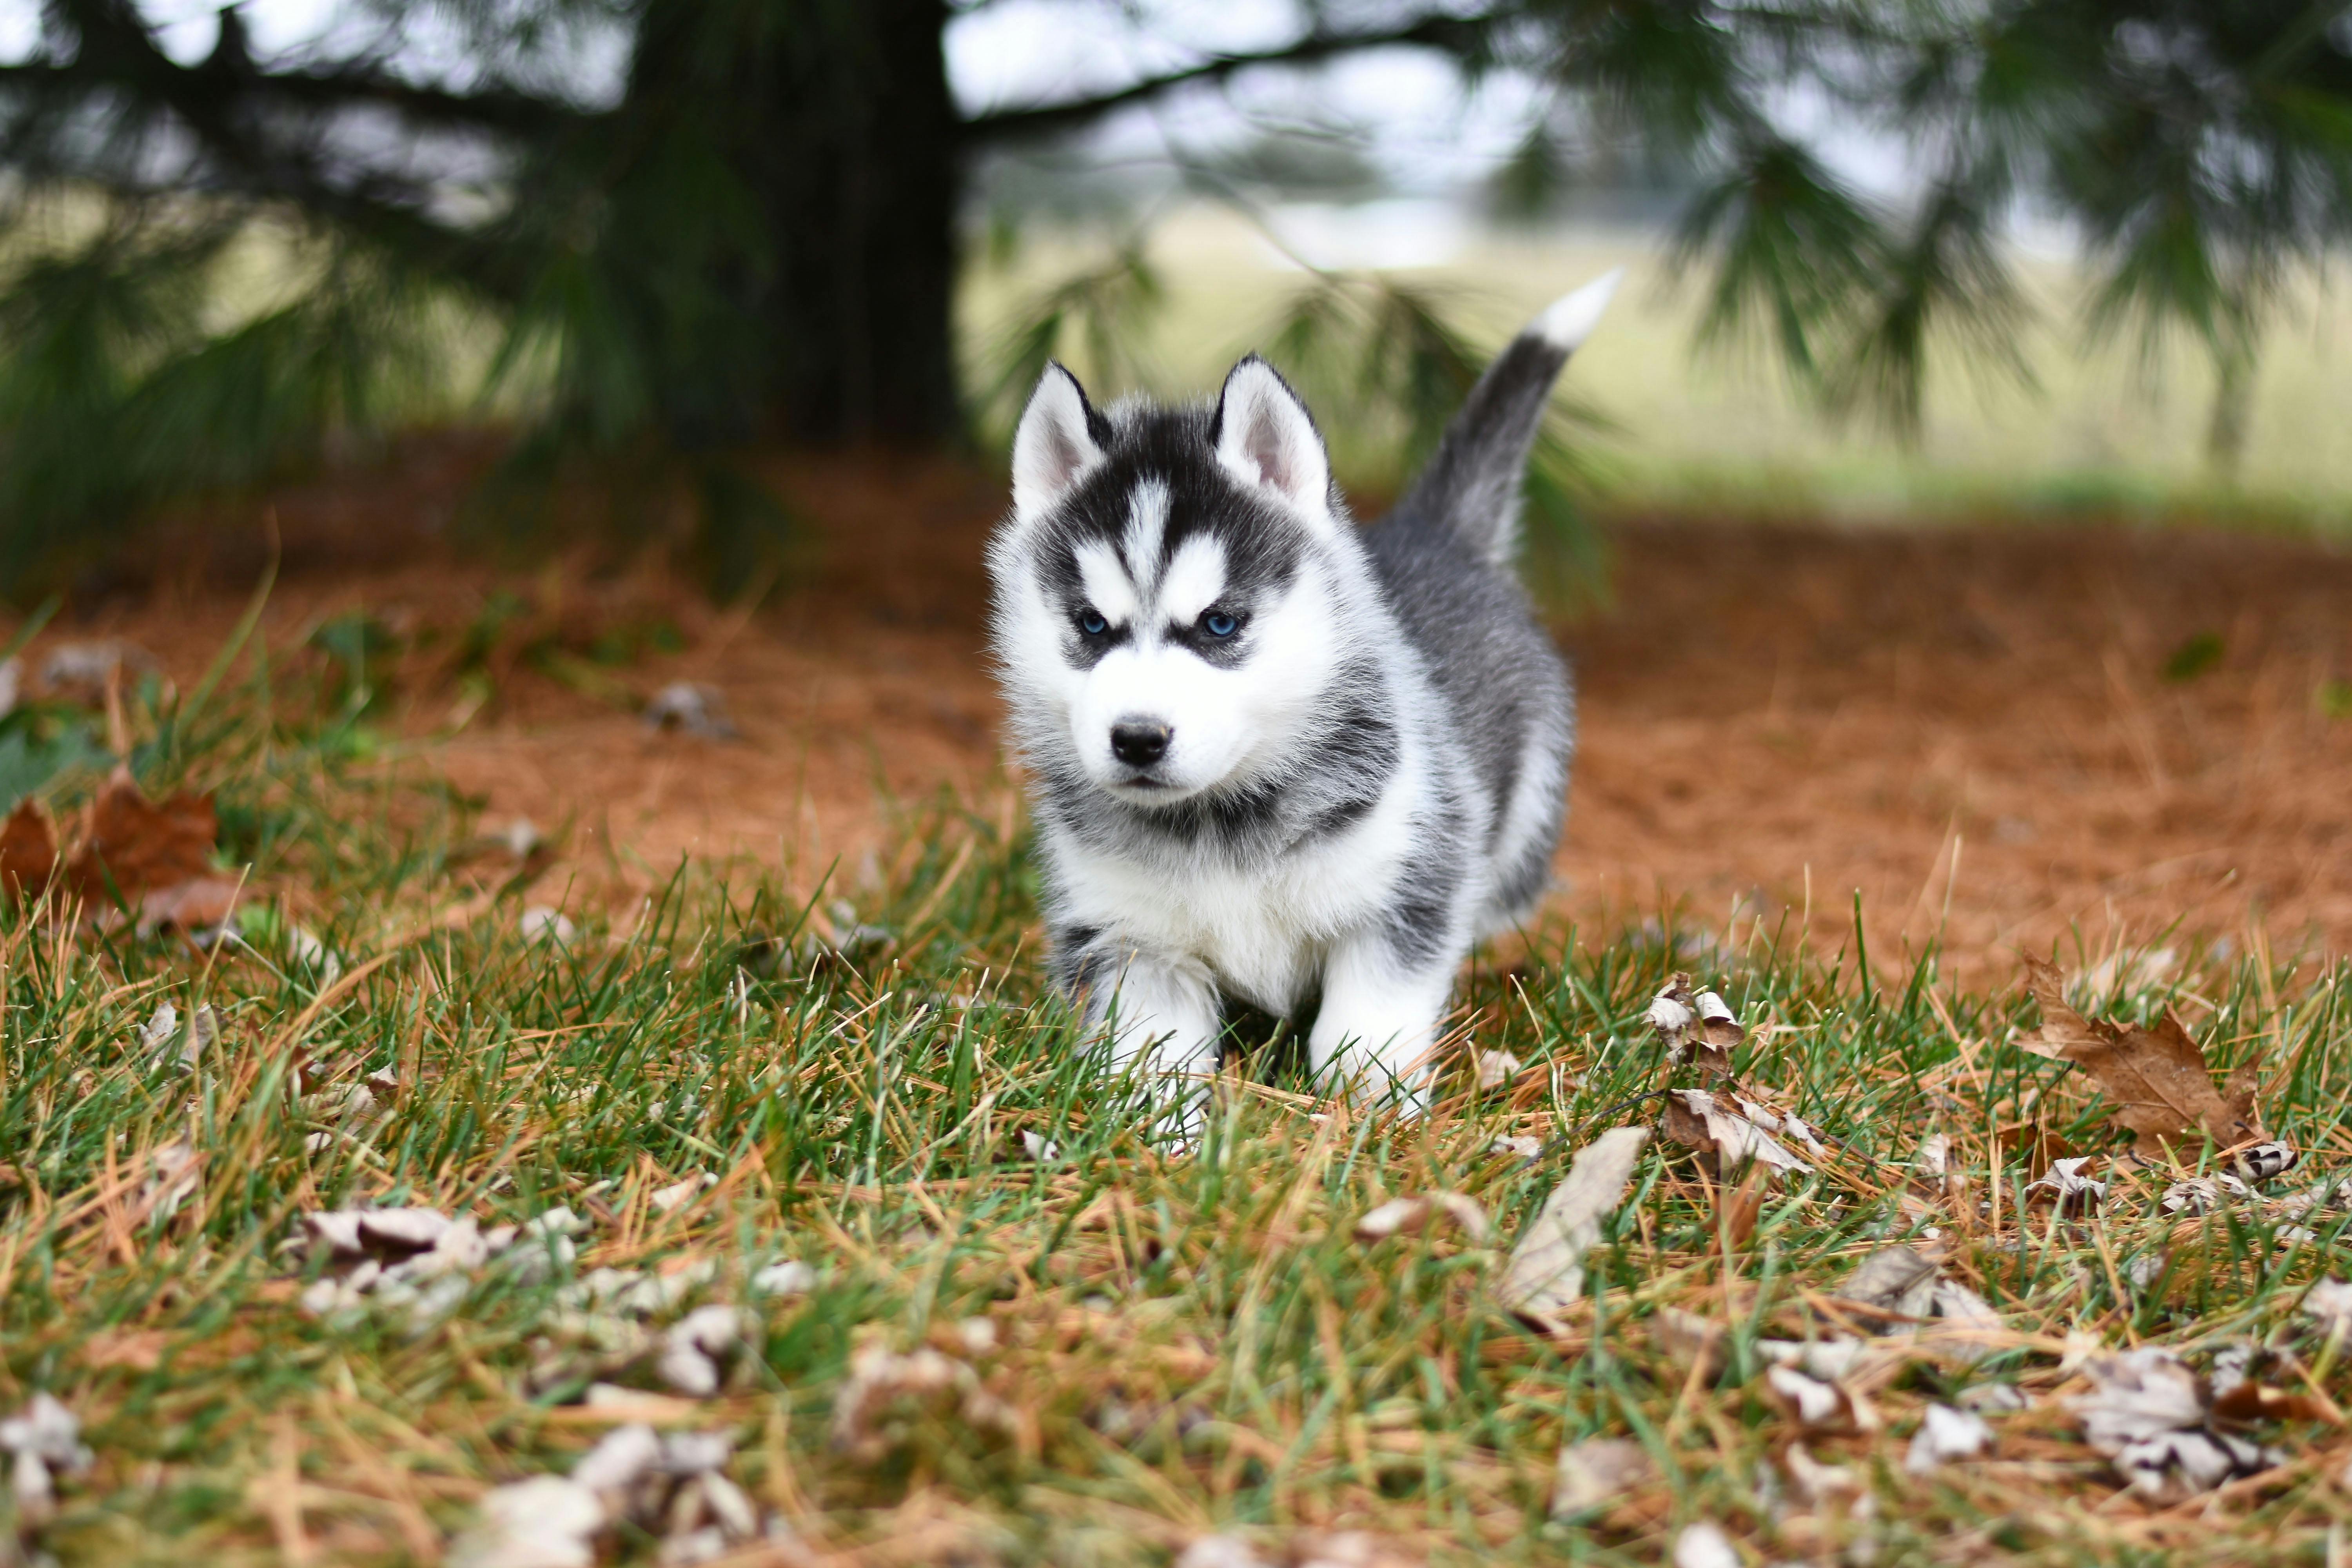 Siberian Husky Photos, Download The BEST Free Siberian Husky Stock Photos &  HD Images